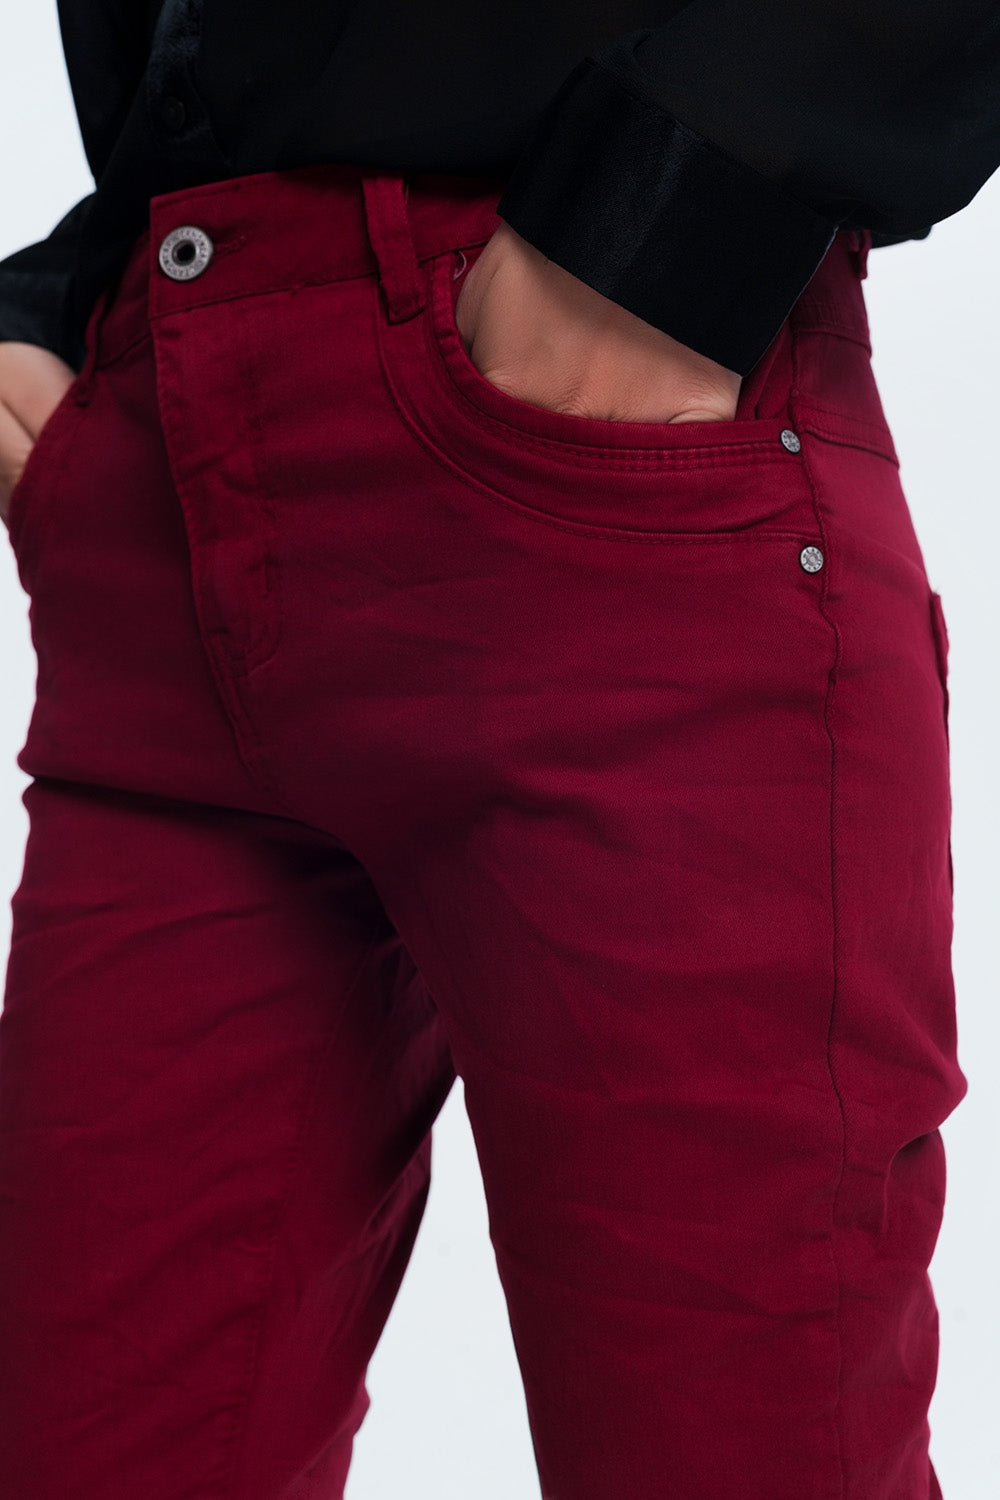 Drop crotch skinny jean in maroon Szua Store